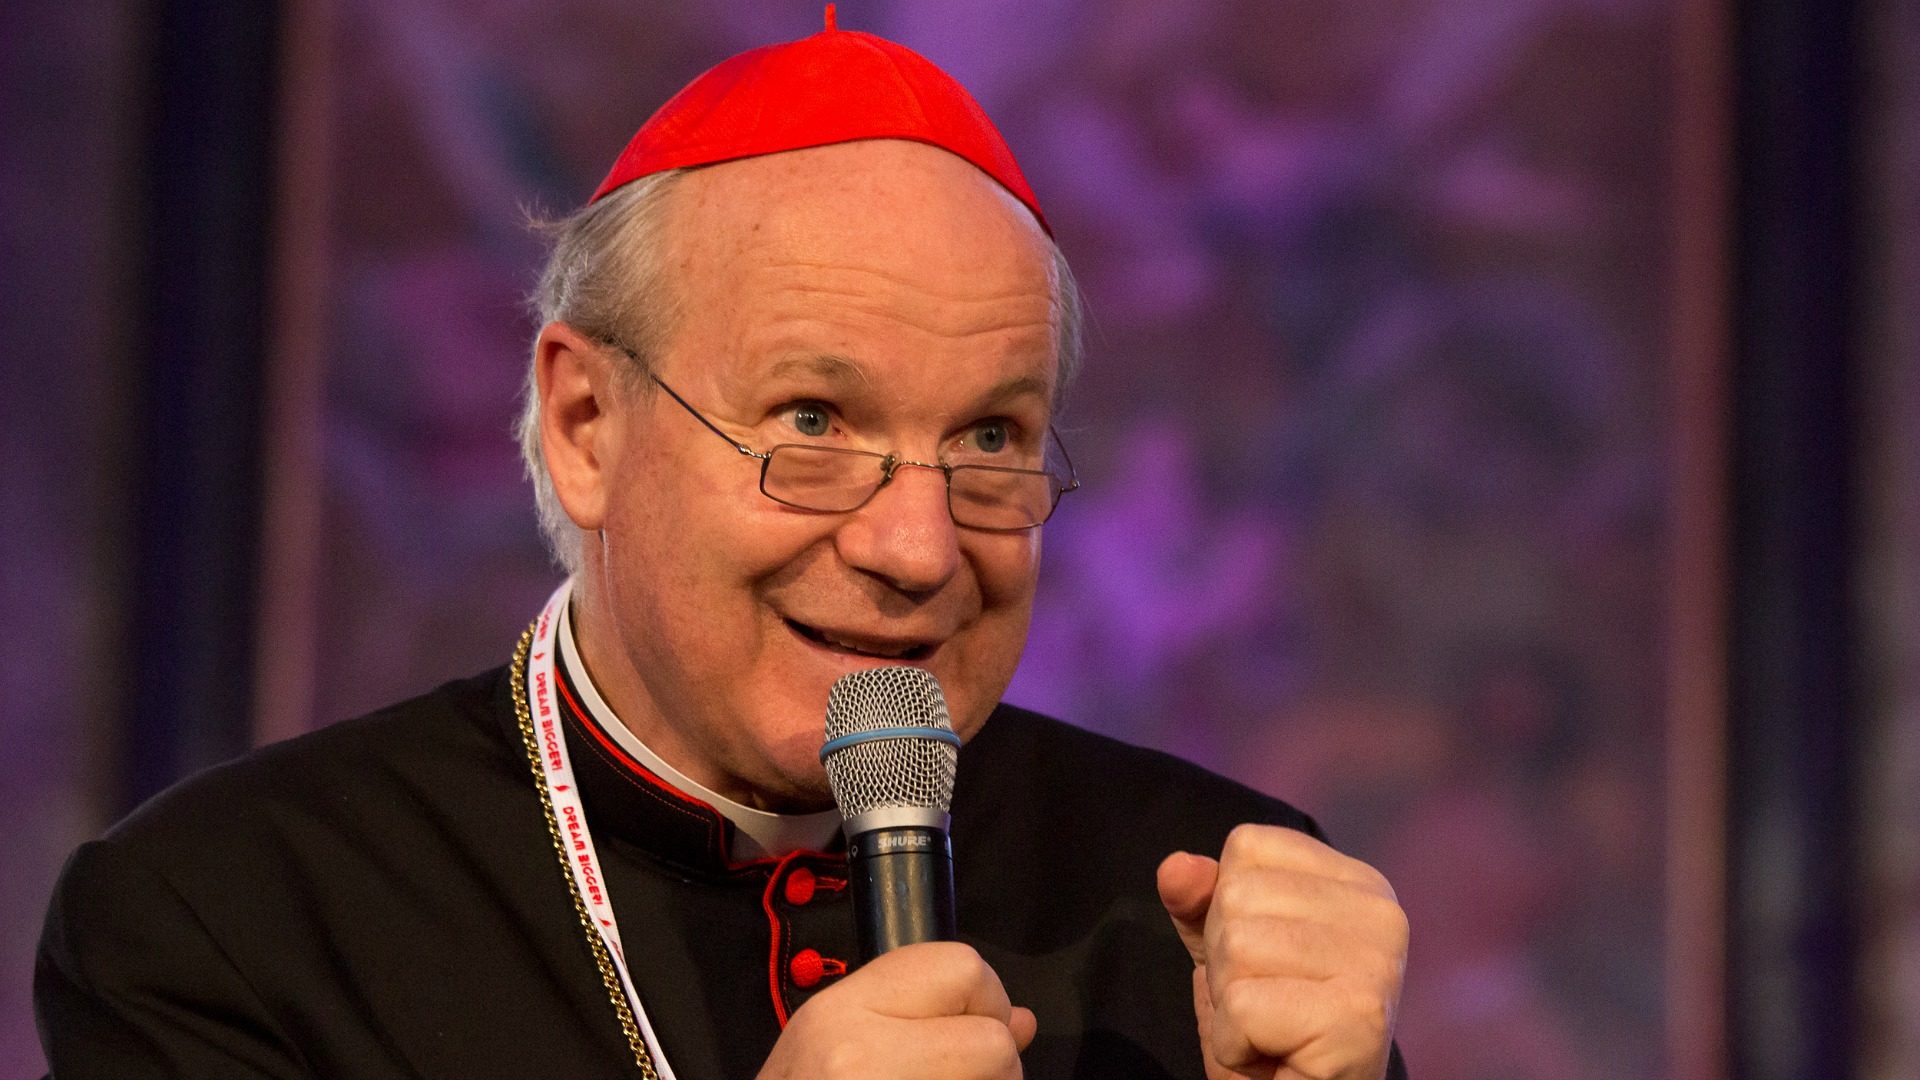 Invité au Synode sur l’Amazonie, le cardinal Christoph Schönborn prévient: "Il ne faut pas tomber dans le cléricalisme." (Photo: Flickr/Cornelius Inama/CC BY-NC-ND 2.0